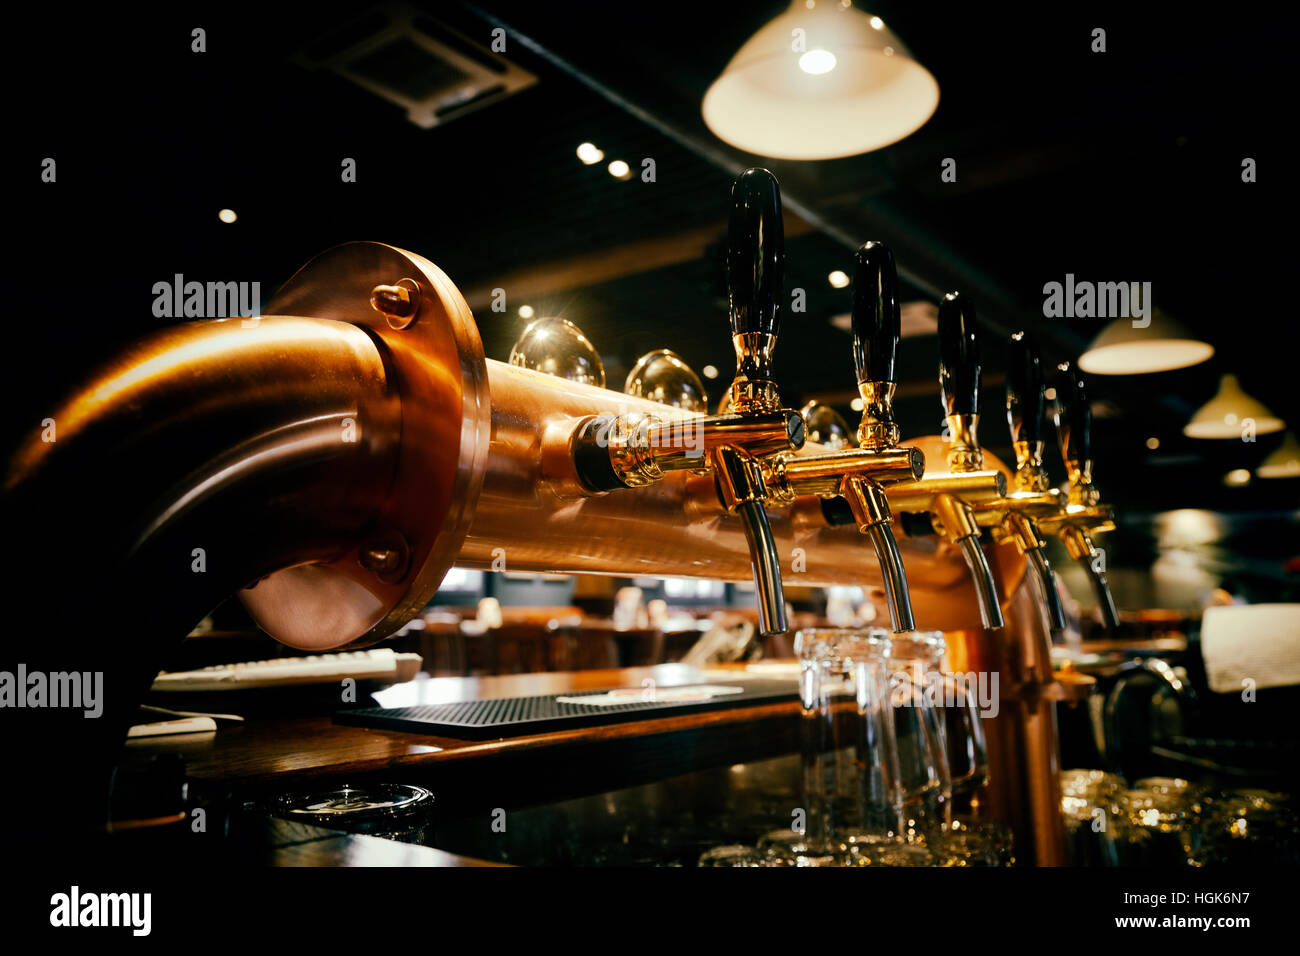 Golden lucido rubinetti di birra nel bar della birra Foto Stock